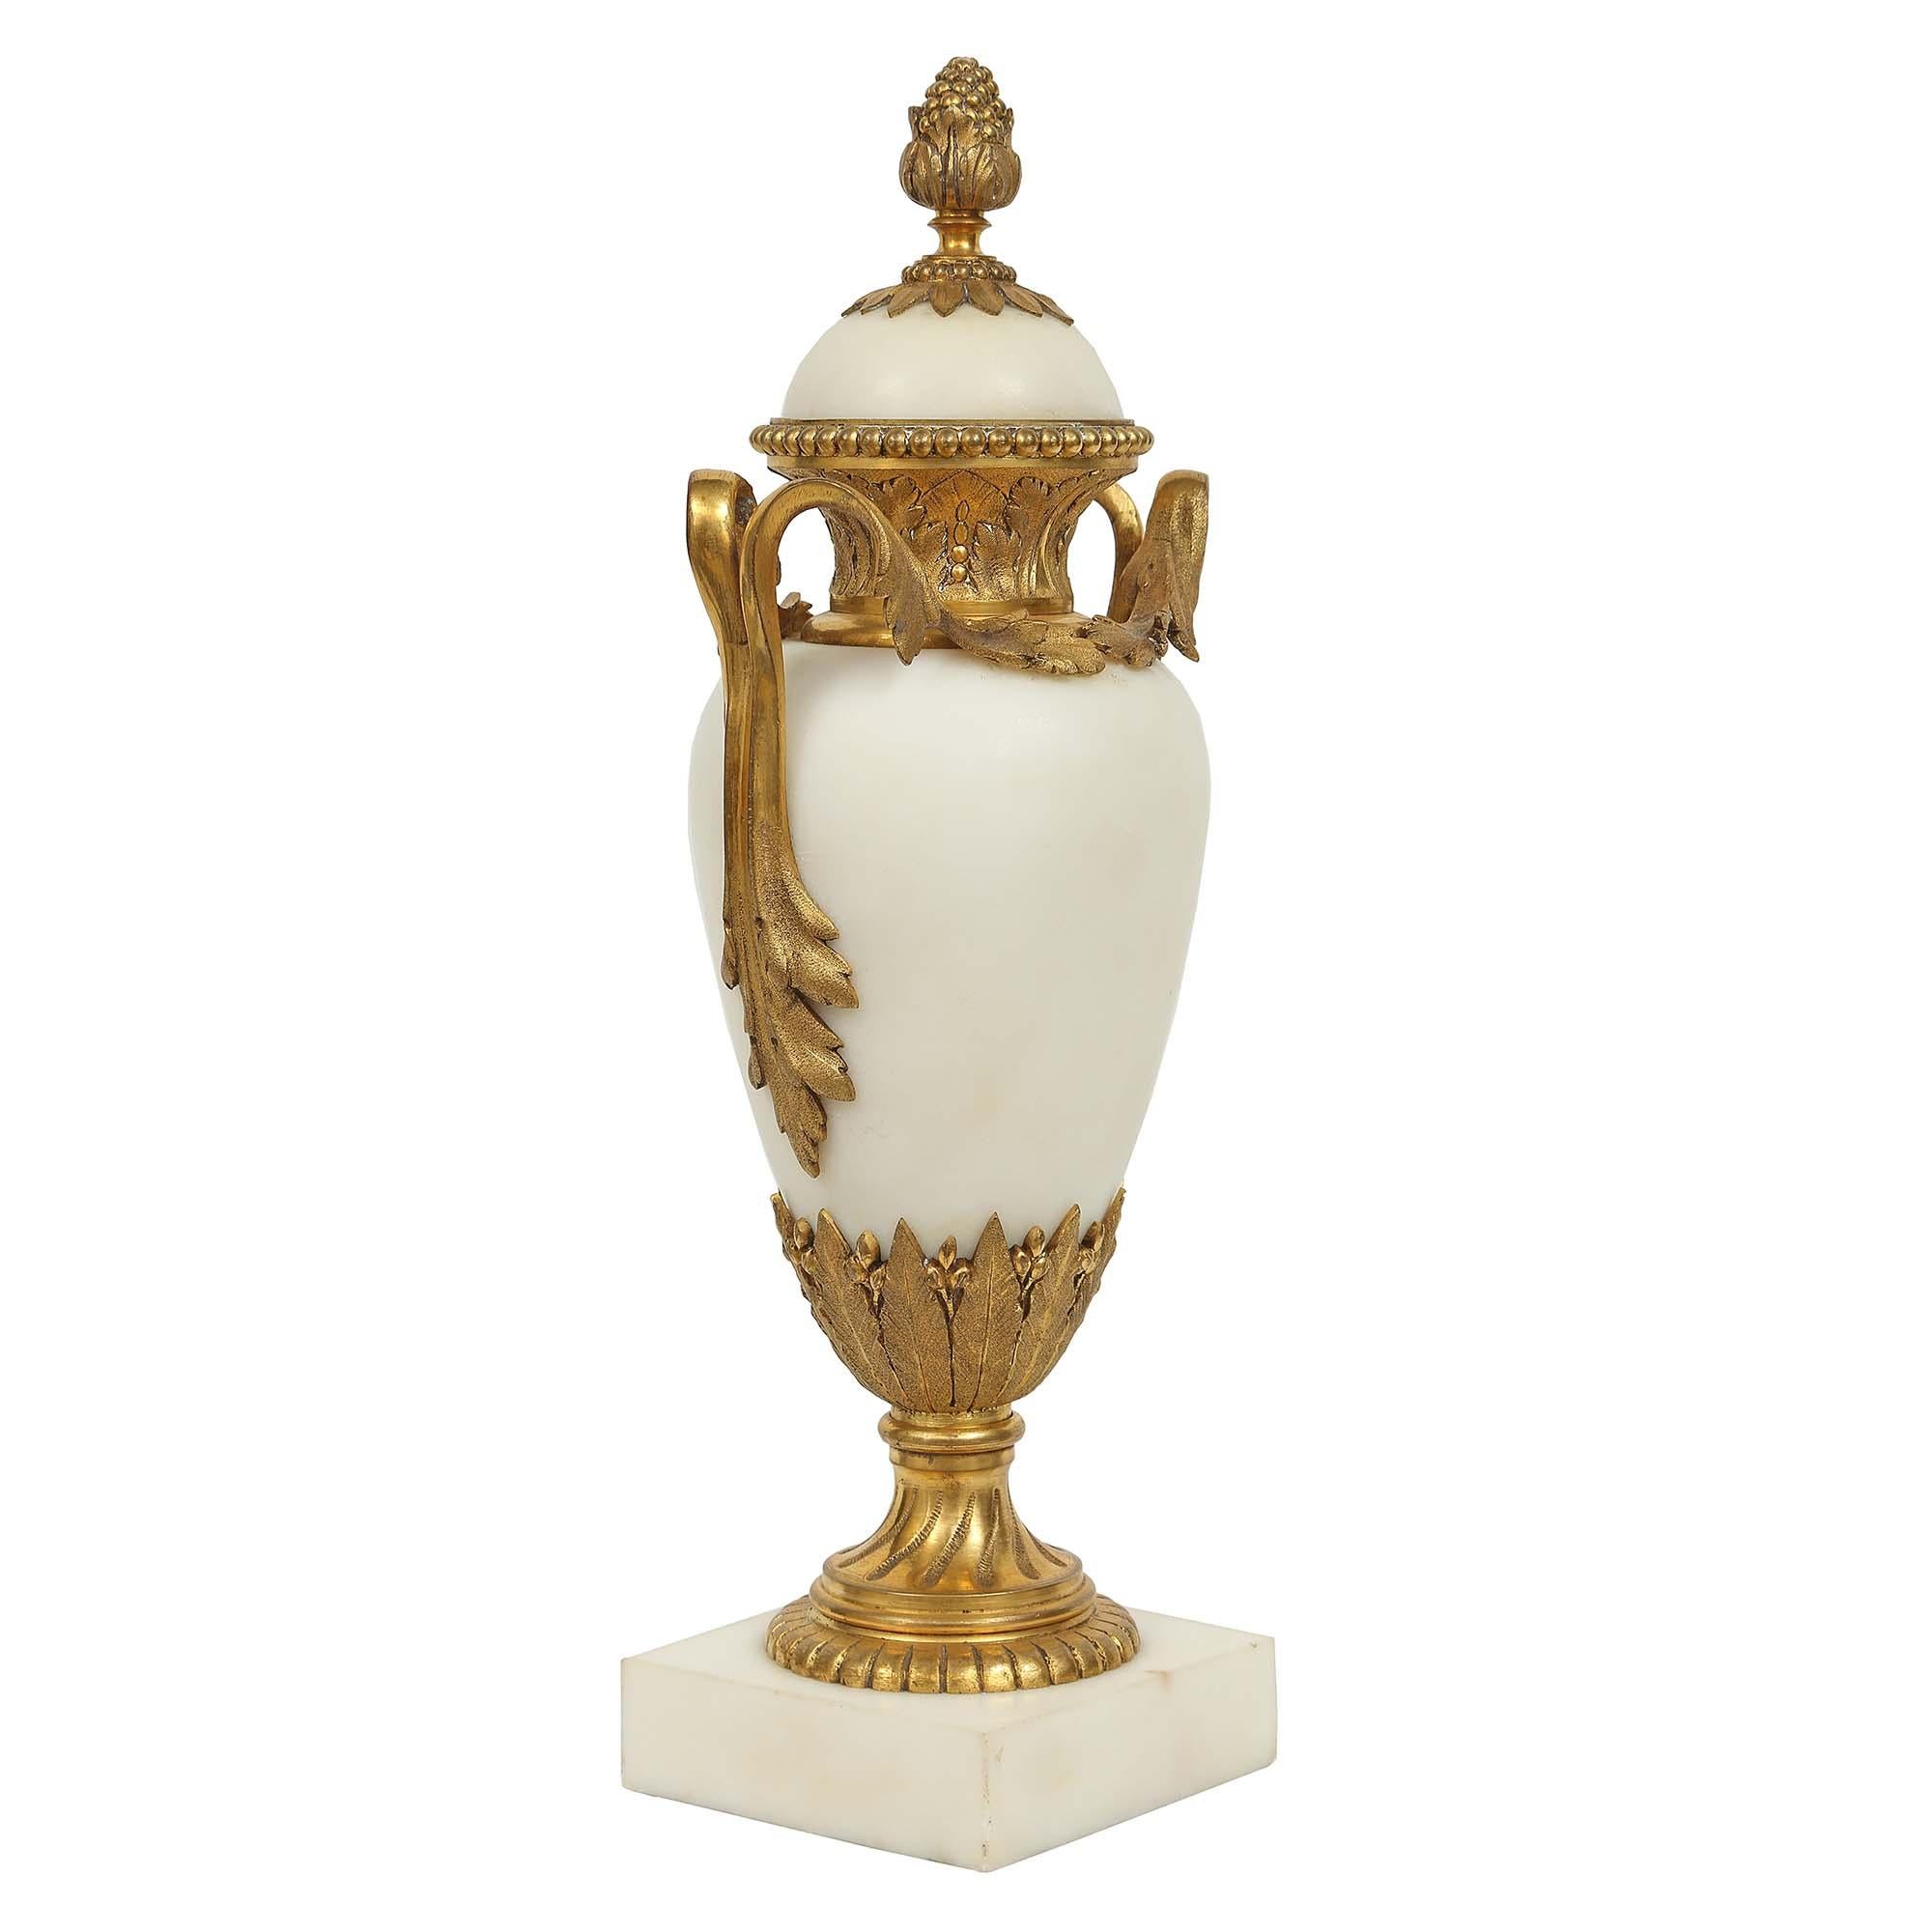 Ein sehr attraktives Paar französischer Louis-XVI-Kassetten aus weißem Carrara-Marmor und Ormolu aus dem 19. Jahrhundert, die alle original vergoldet sind. Das Paar wird von einem dicken, quadratischen Marmorsockel getragen. Darüber befindet sich